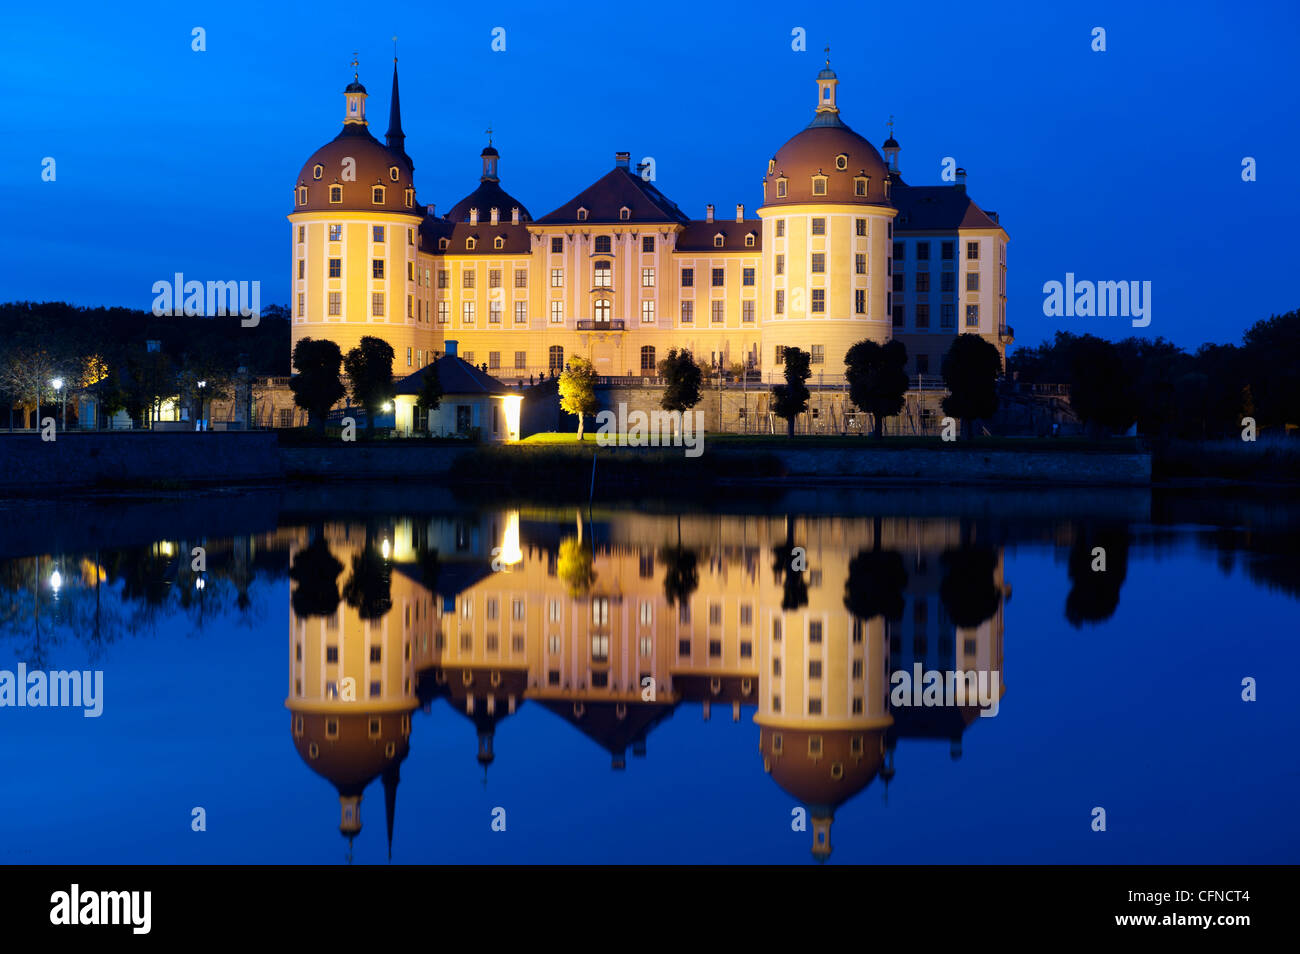 Barocco castello di Moritzburg e riflessi nel lago al crepuscolo, Moritzburg, Sachsen, Germania, Europa Foto Stock